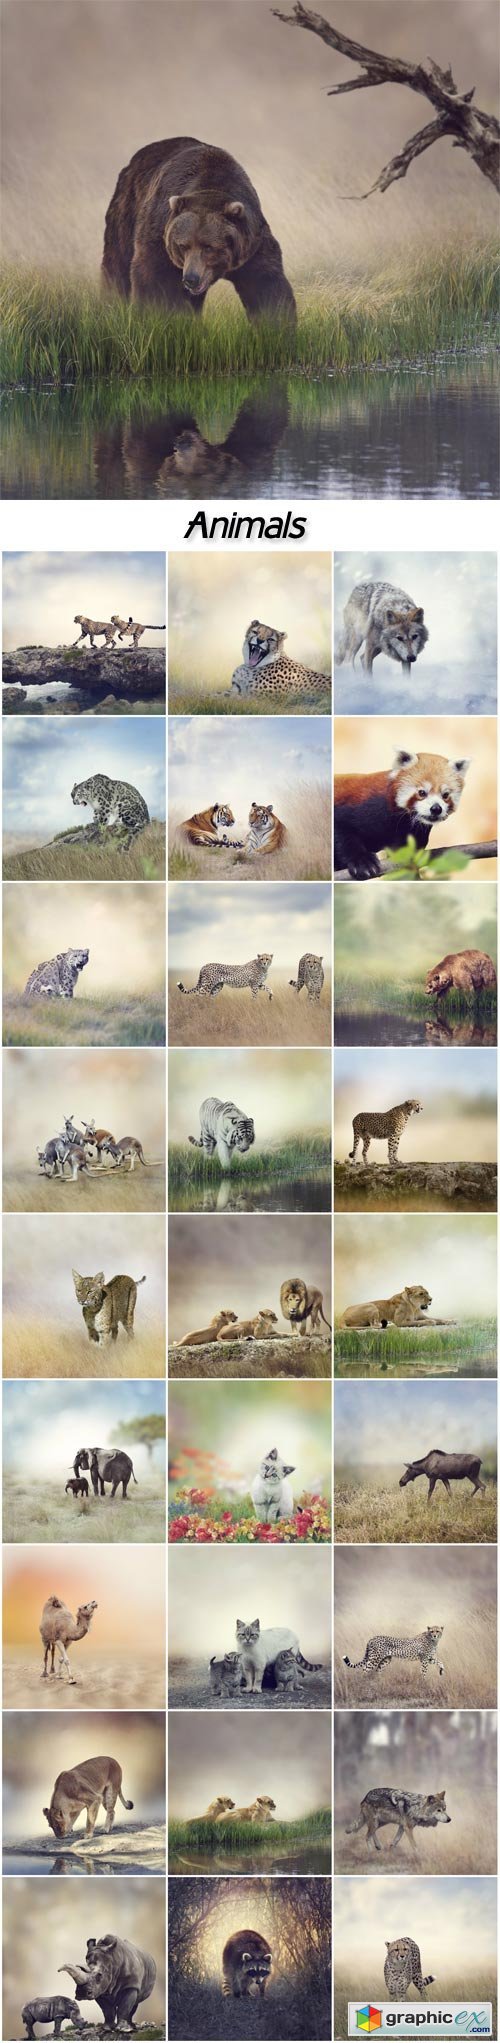  Animals, leopard, wolf, bear, elephant, camel, rhinoceros